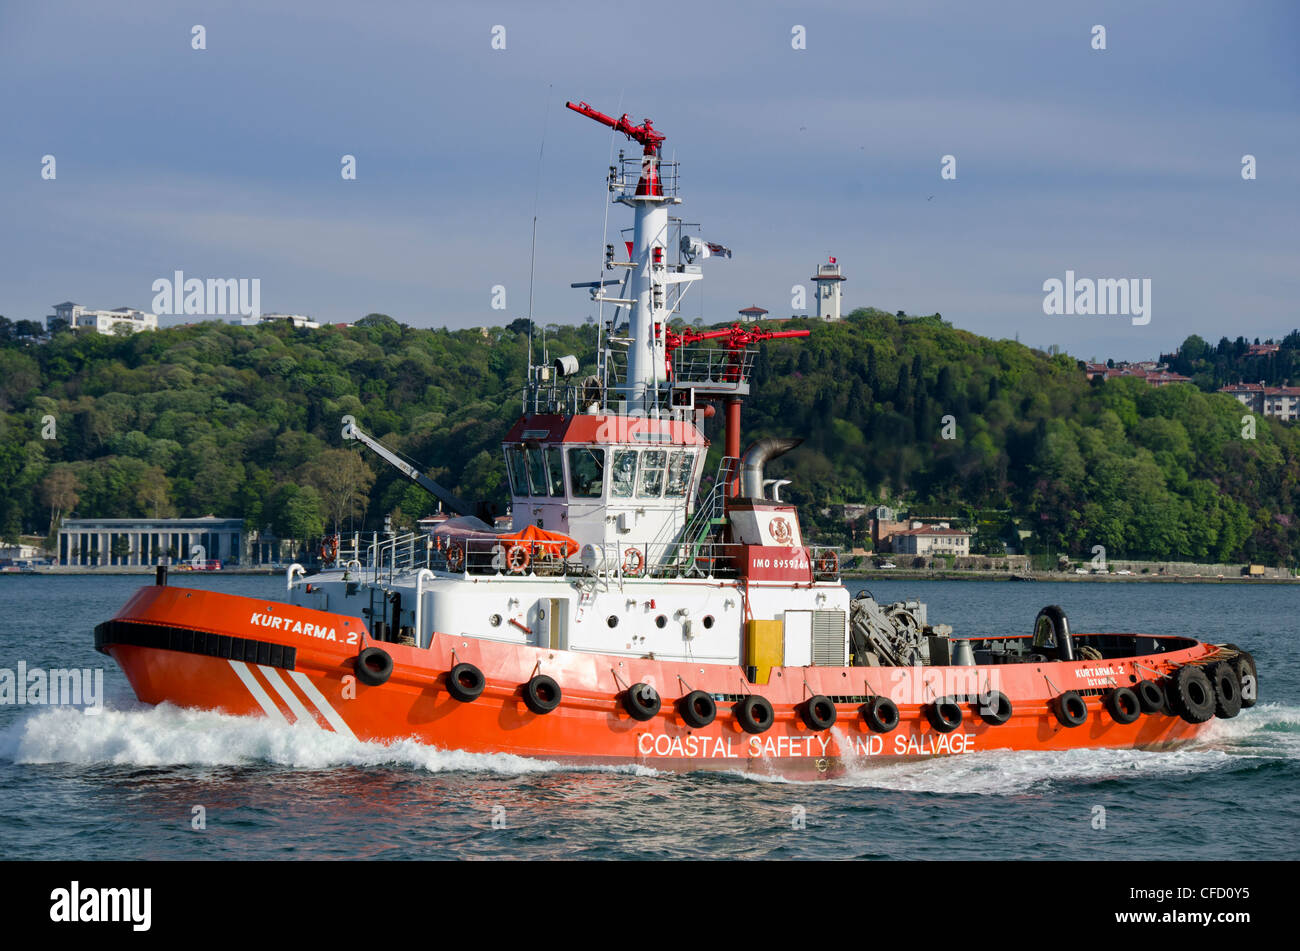 Traffico marittimo, sicurezza costiera rimorchiatore, lungo il Bosforo, Istanbul, Turchia Foto Stock